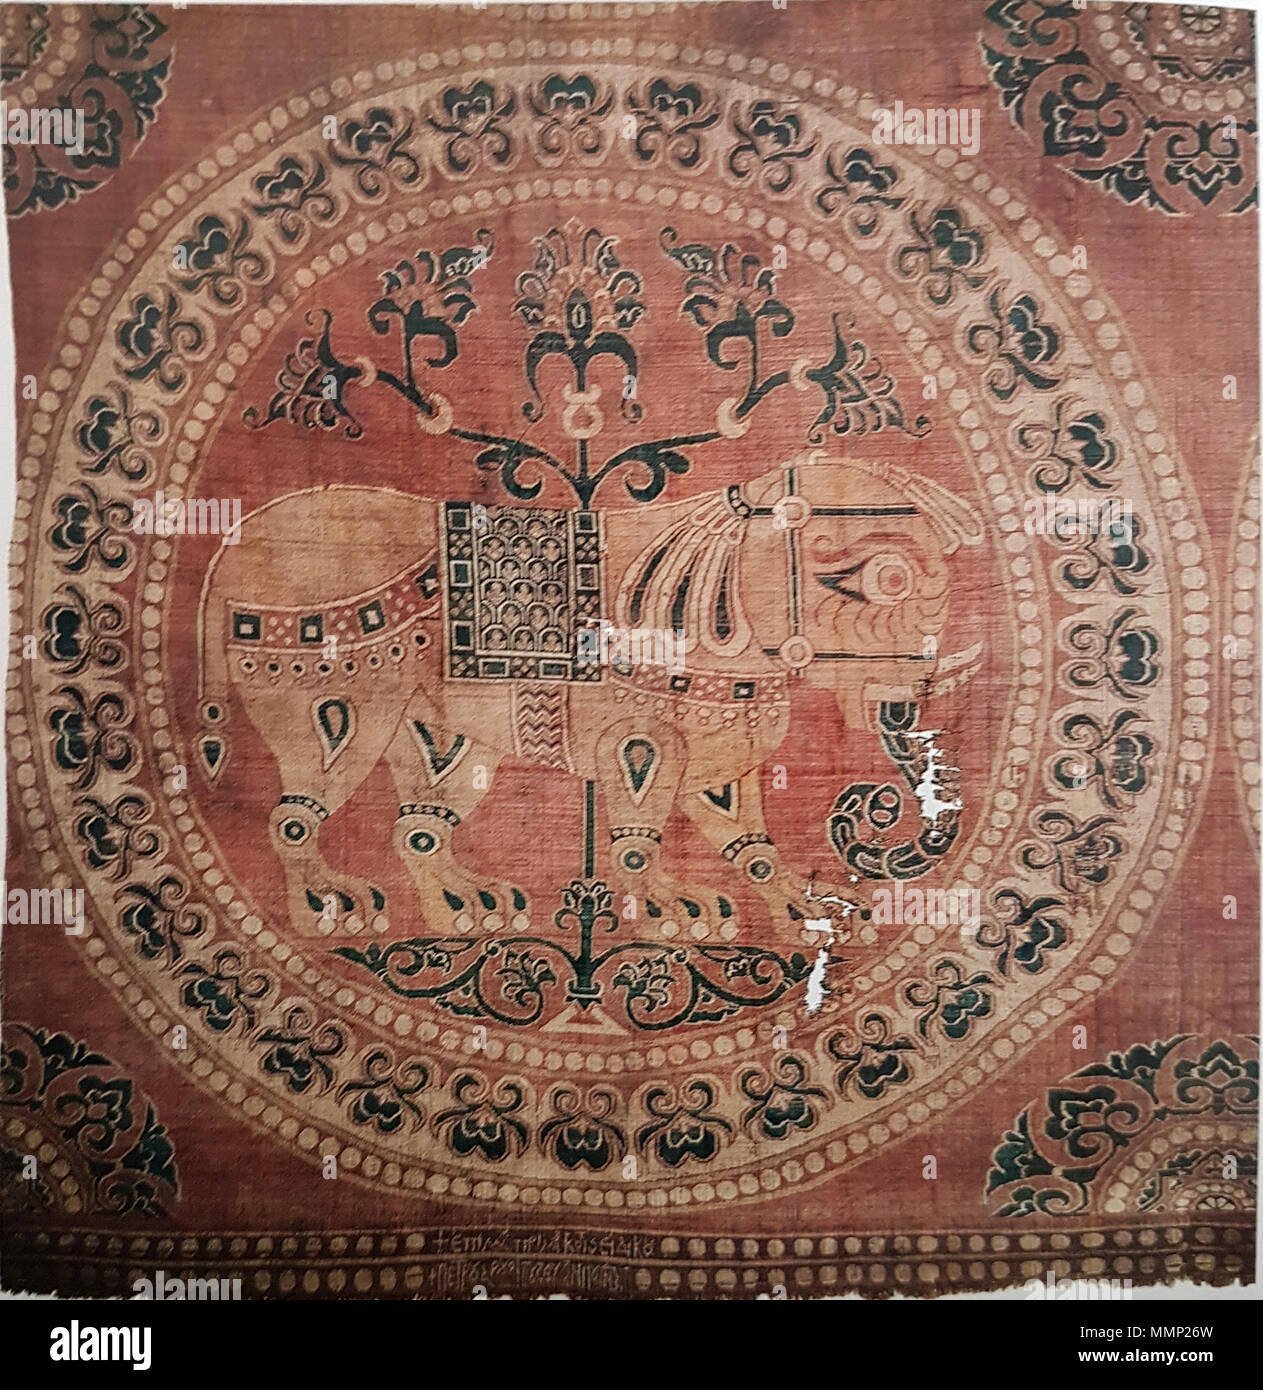 Seta bizantina immagini e fotografie stock ad alta risoluzione - Alamy